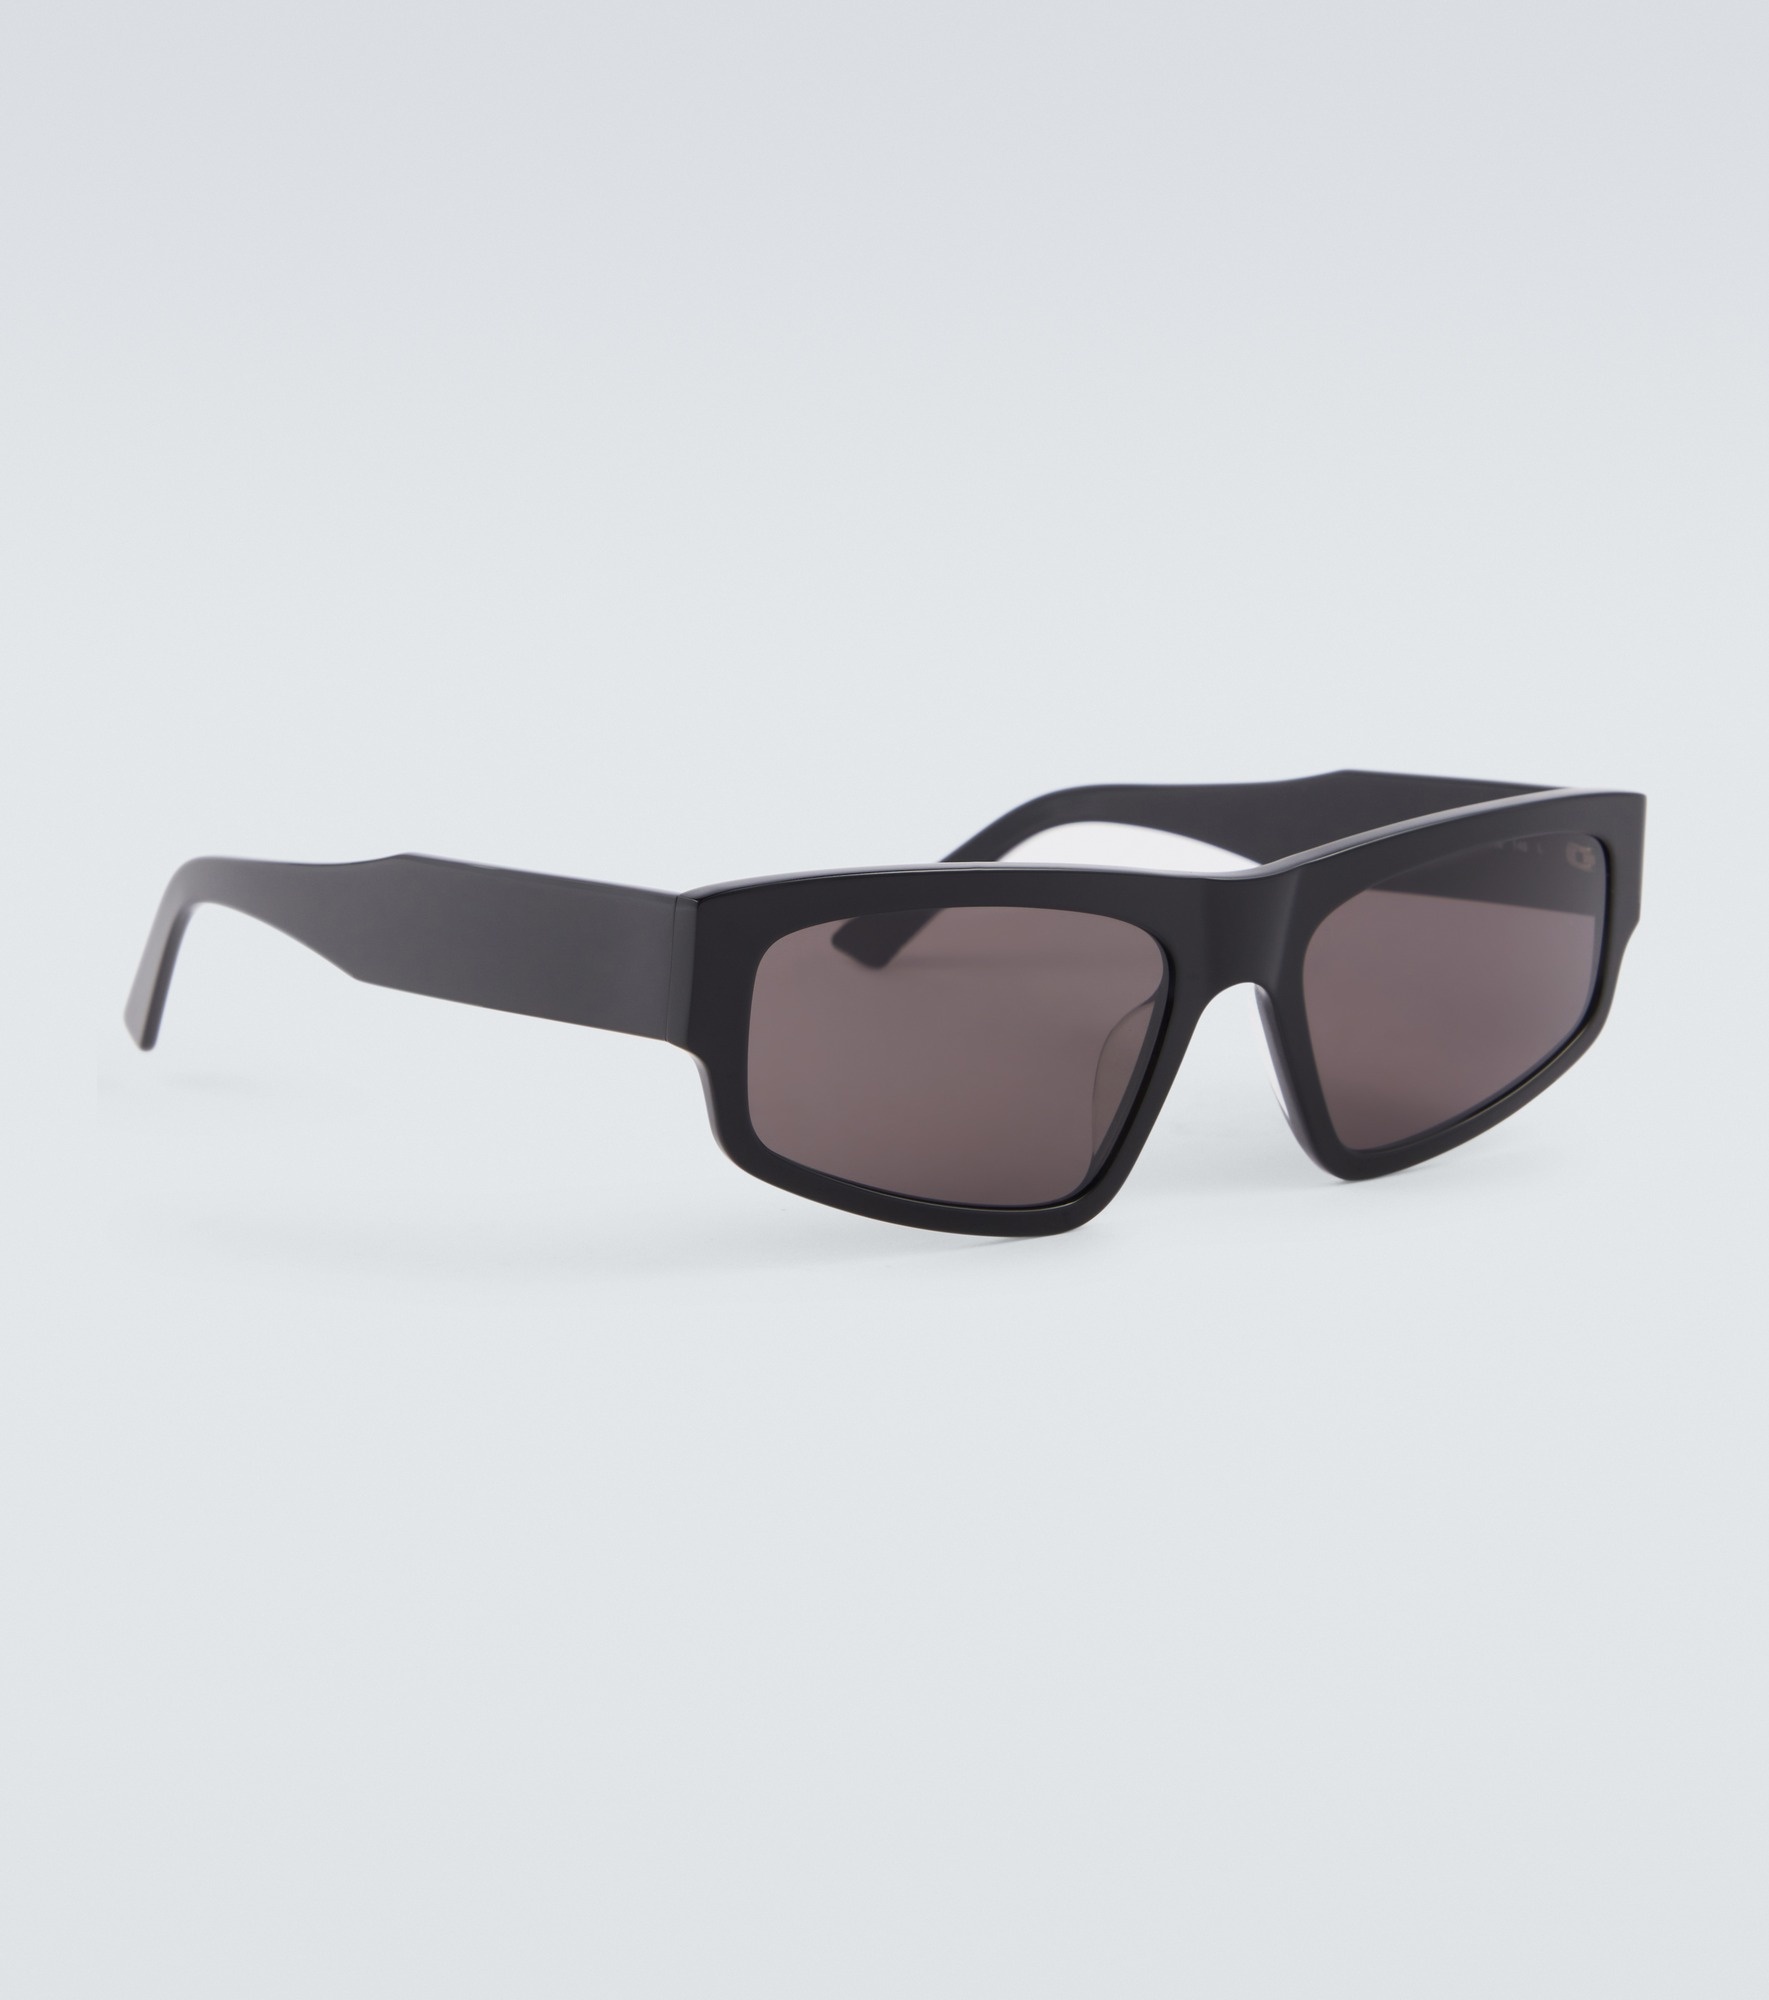 Square sunglasses - 4